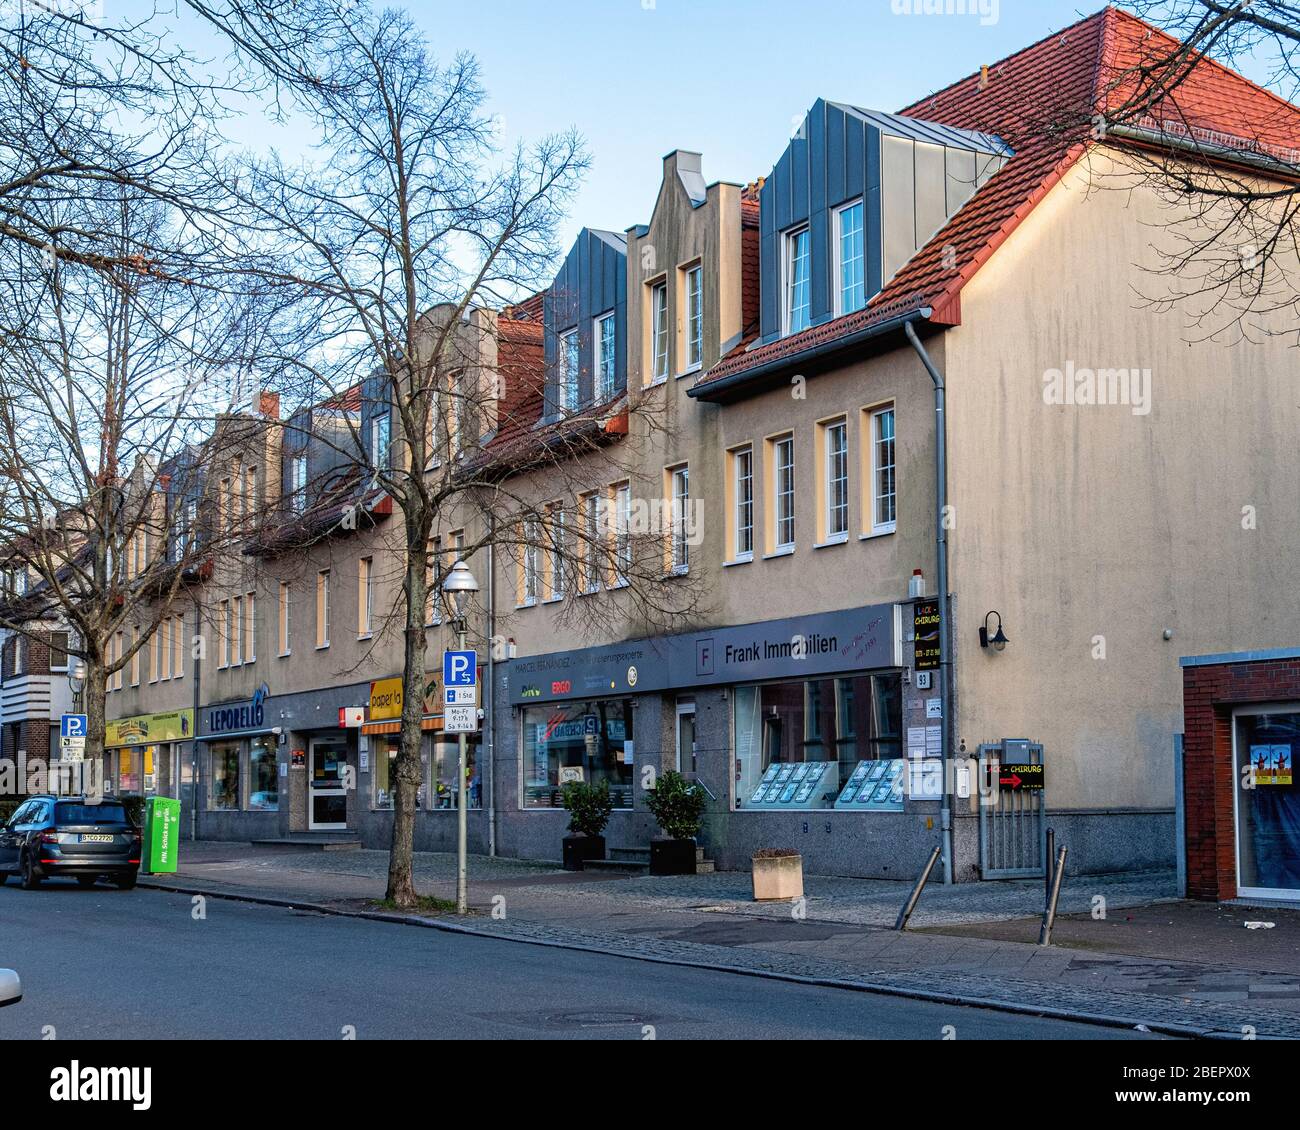 Krokusstrasse street view.  Frank Immobilien, DKW Insurance, Paperlapapp and Leporello shops - Rudow-Berlin, Neukölln, Germany Stock Photo